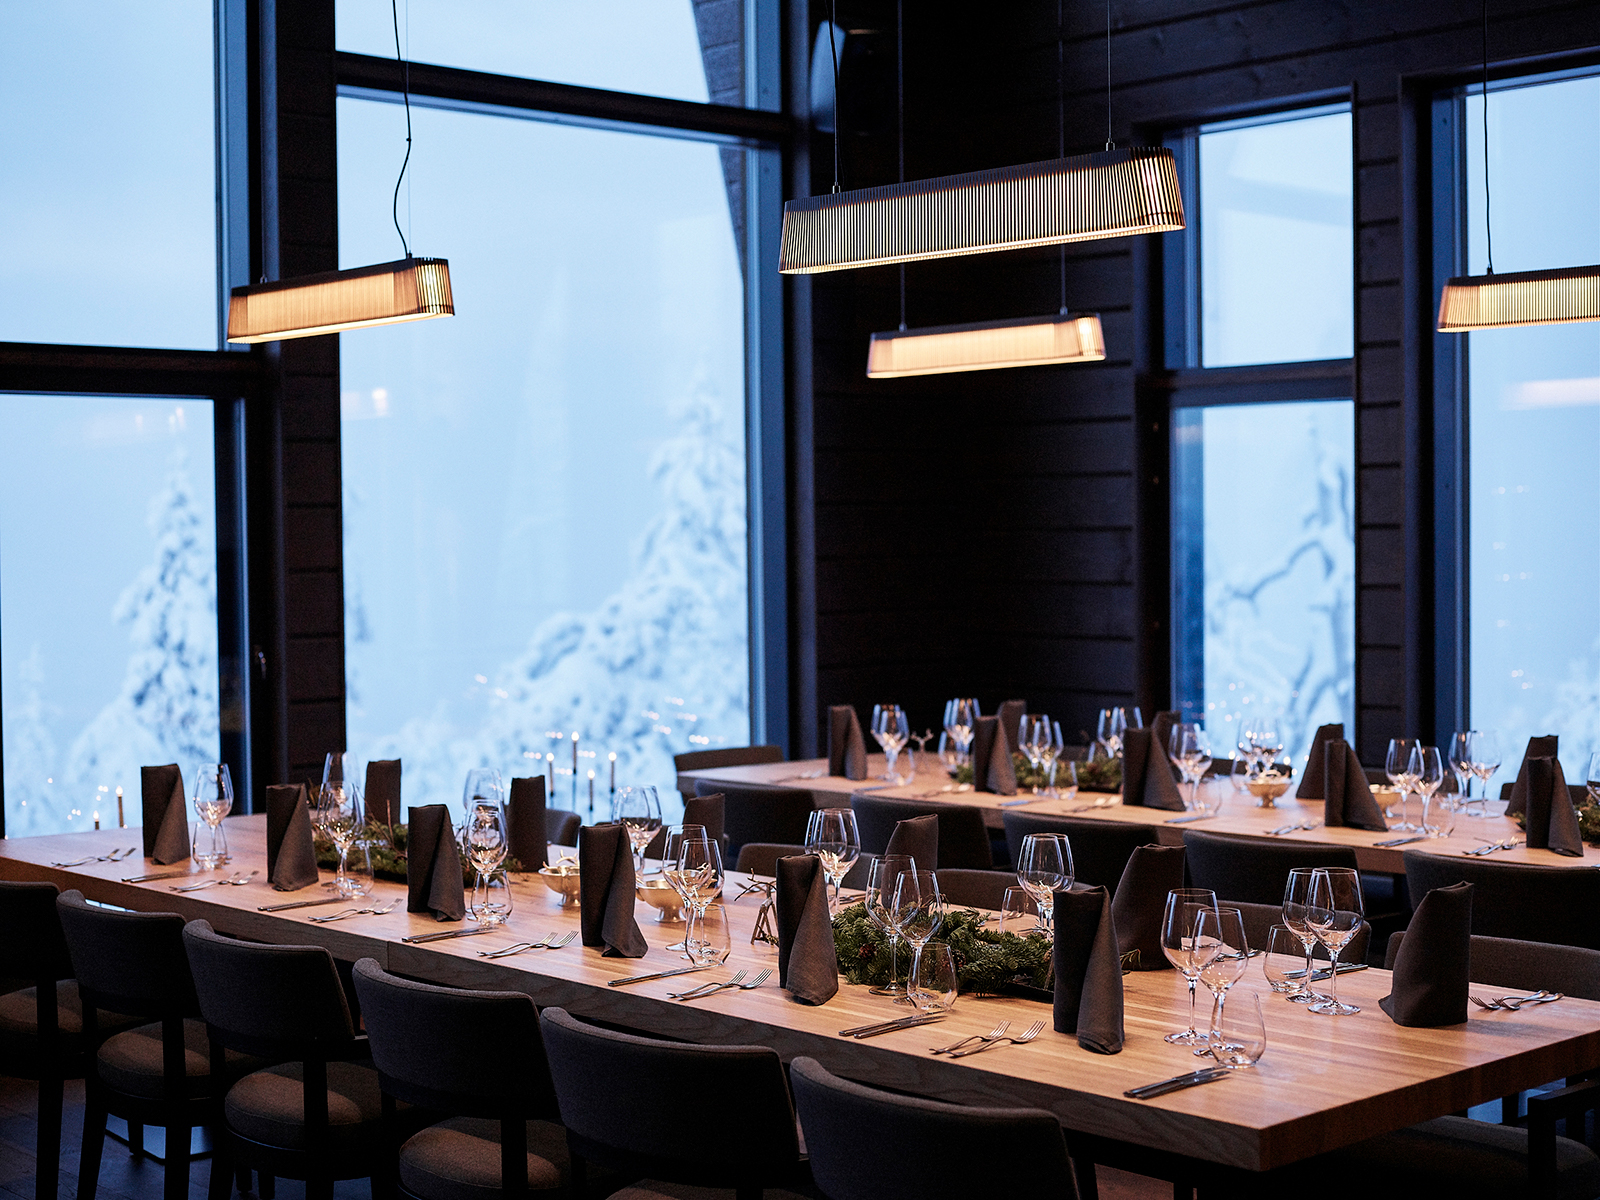 Une salle à manger avec quatre suspensions Owalo et un paysage d'hiver derrière la fenêtre. Les tables sont mises.